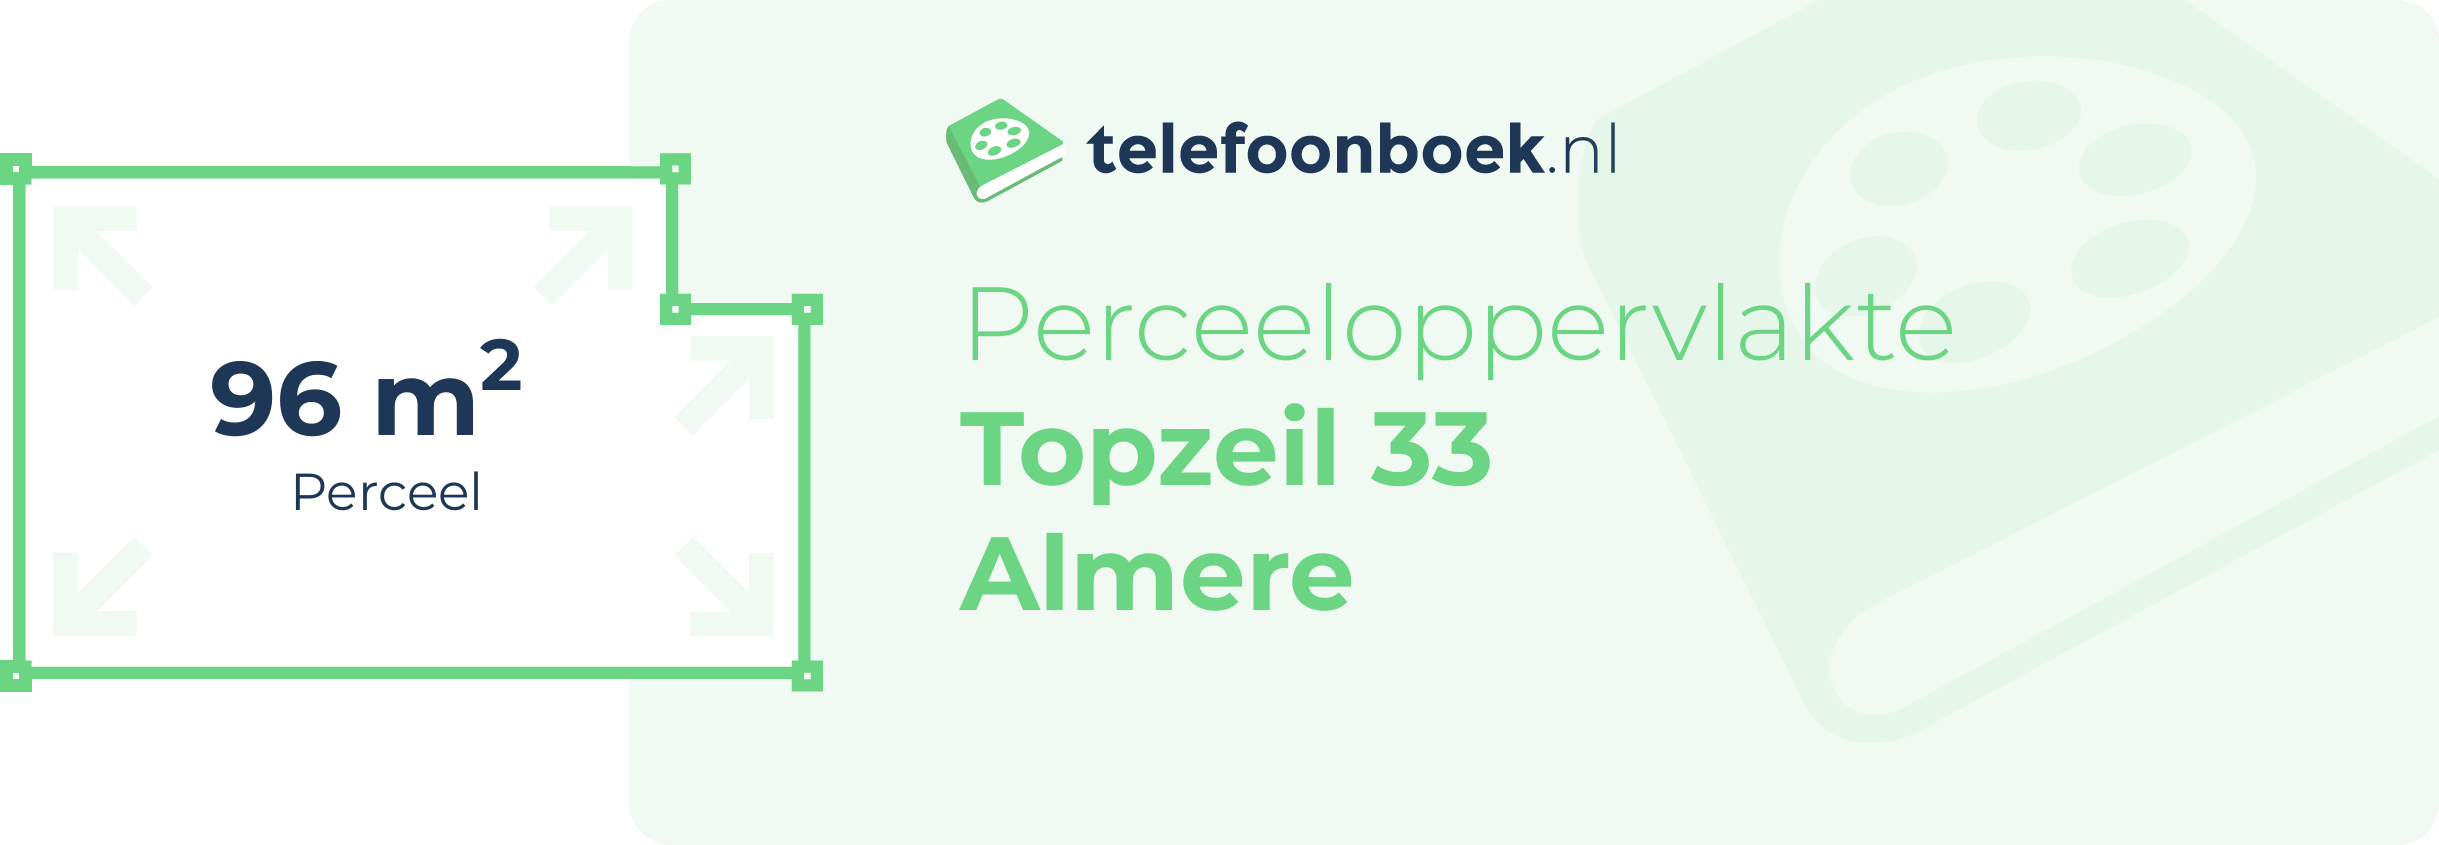 Perceeloppervlakte Topzeil 33 Almere